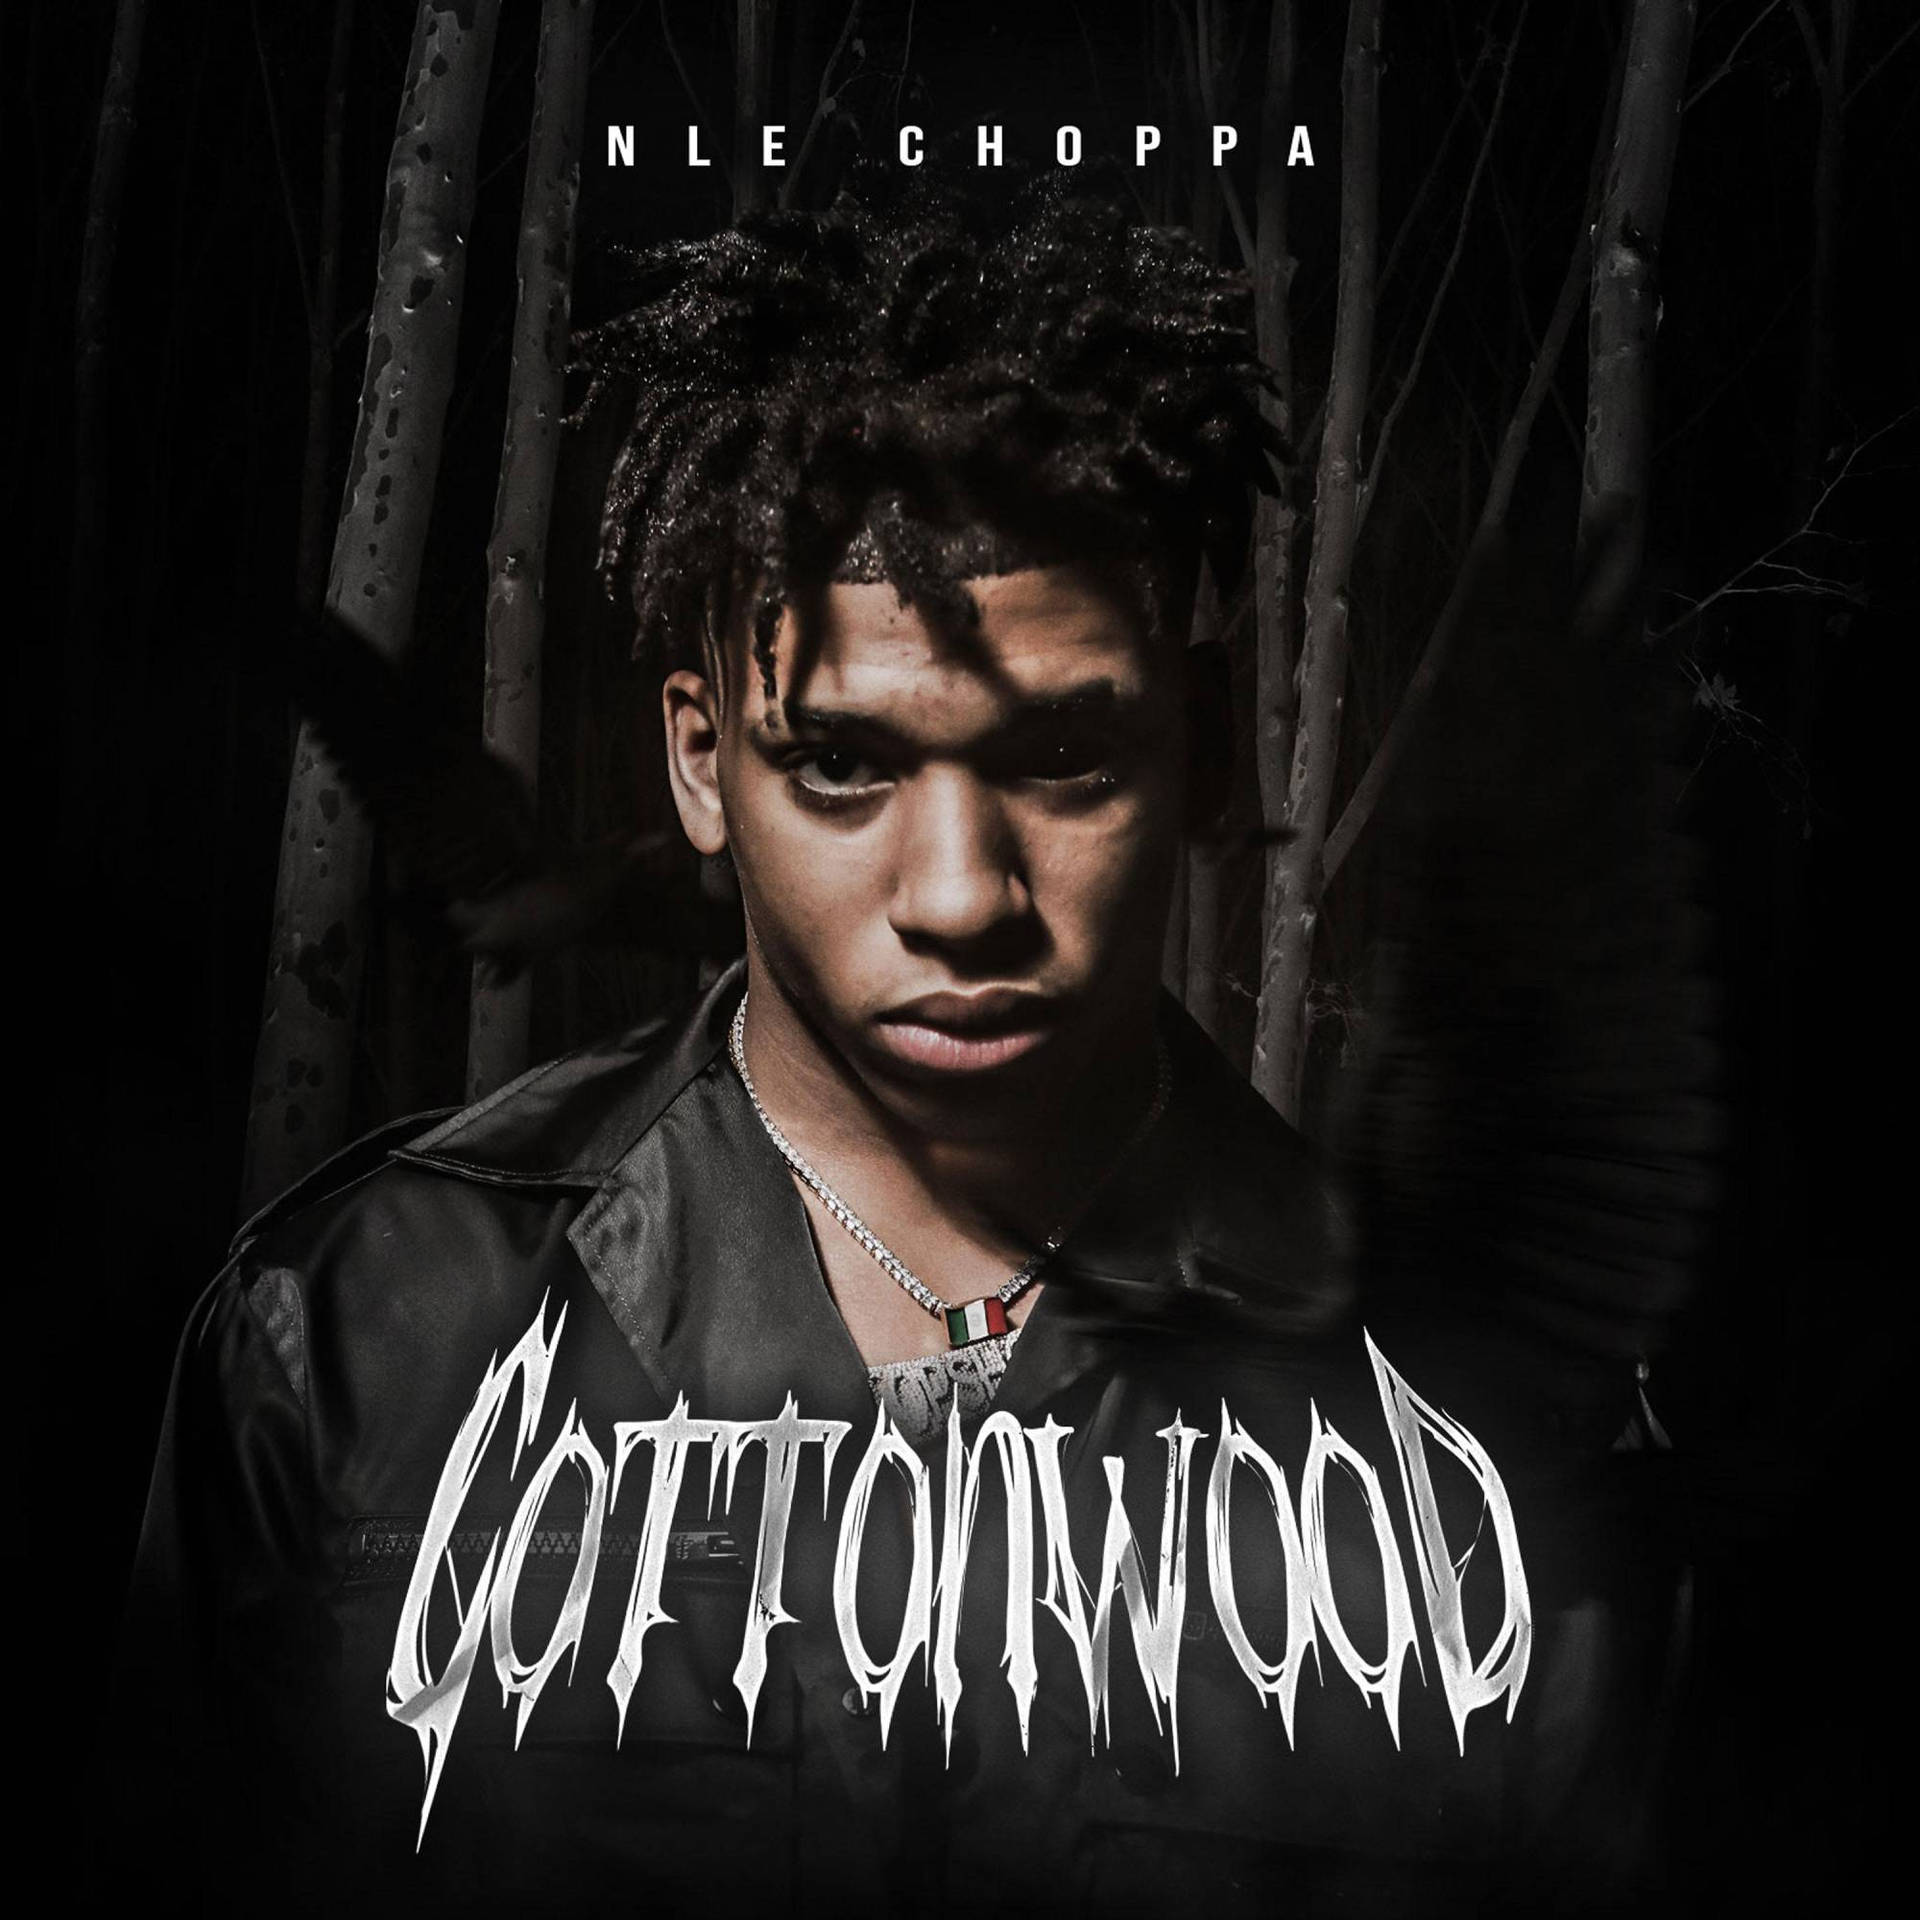 Nle Choppa Cottonwood Background